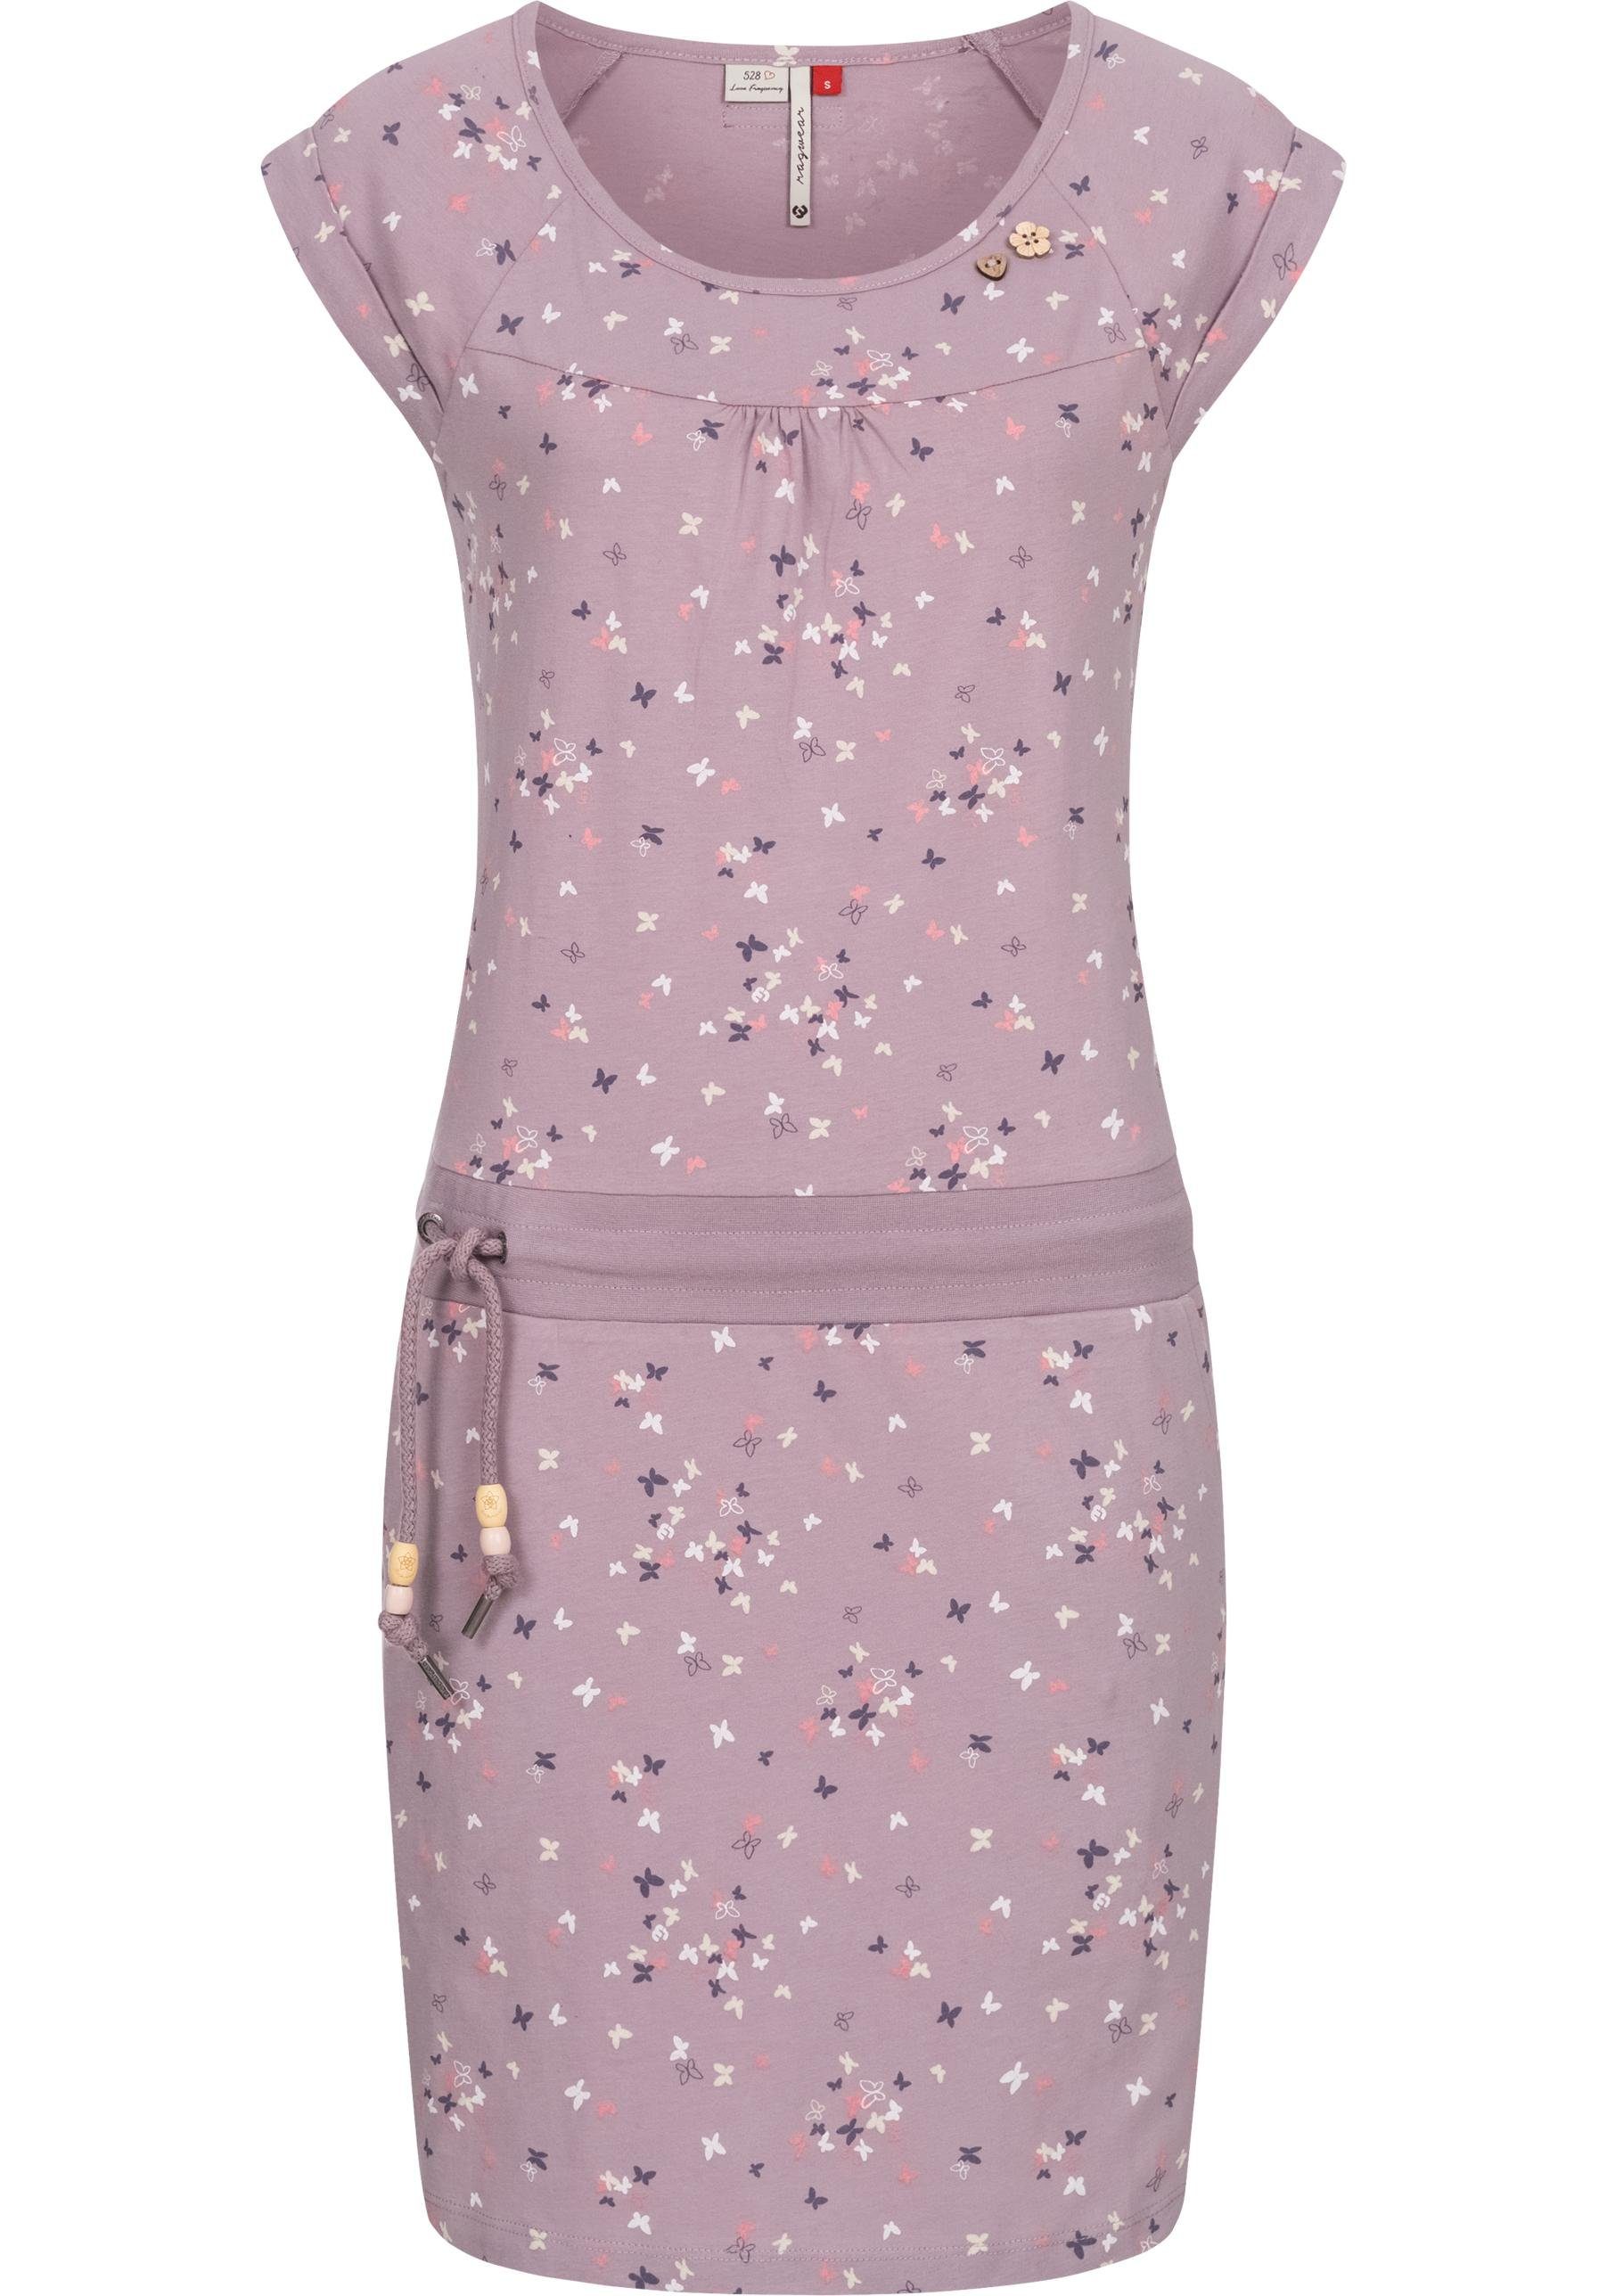 Ragwear Sommerkleid Penelope leichtes Baumwoll Kleid mit Print lavendel